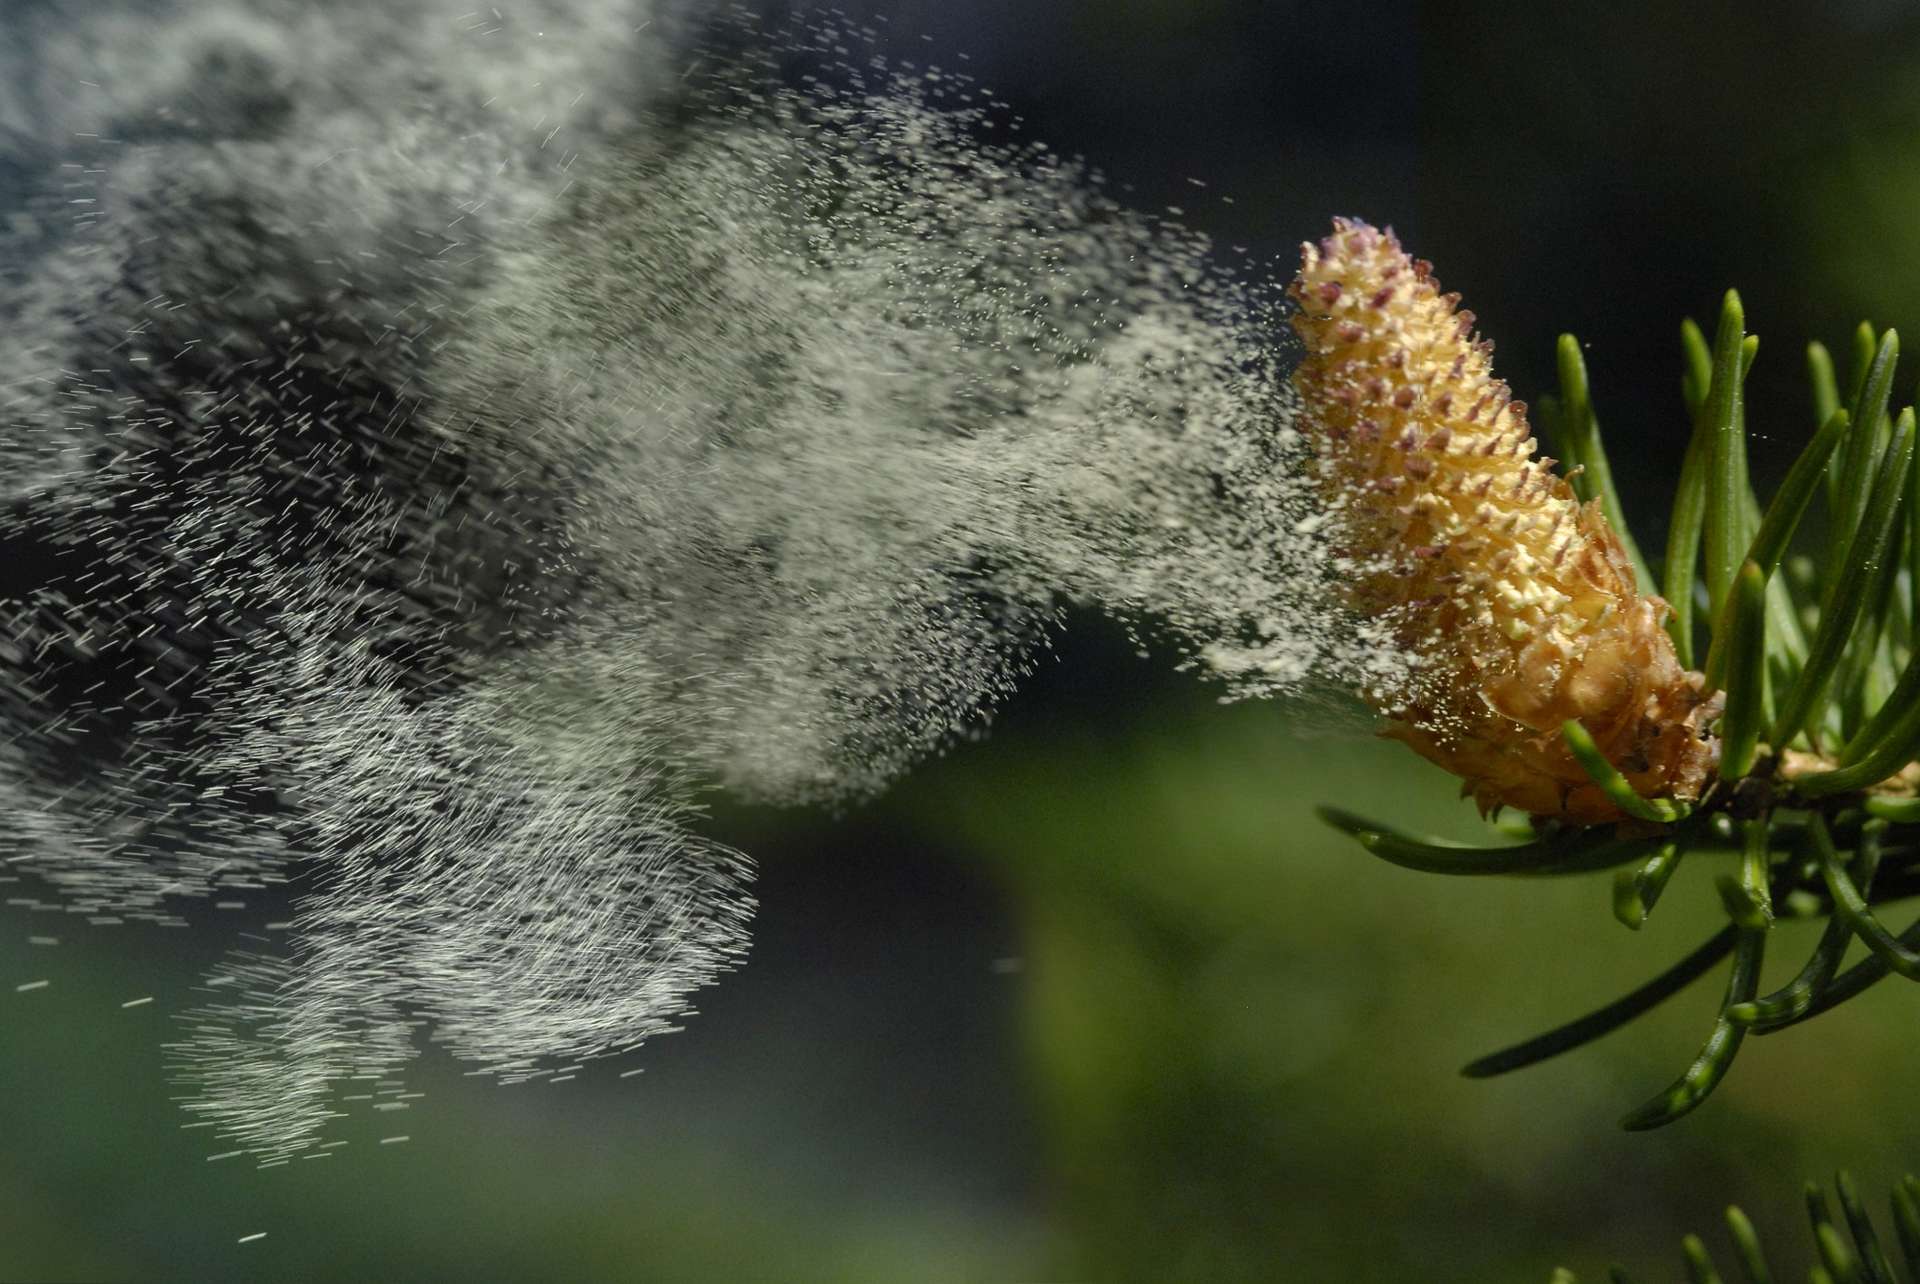 Comment la météo impacte la dispersion des pollens et les allergies